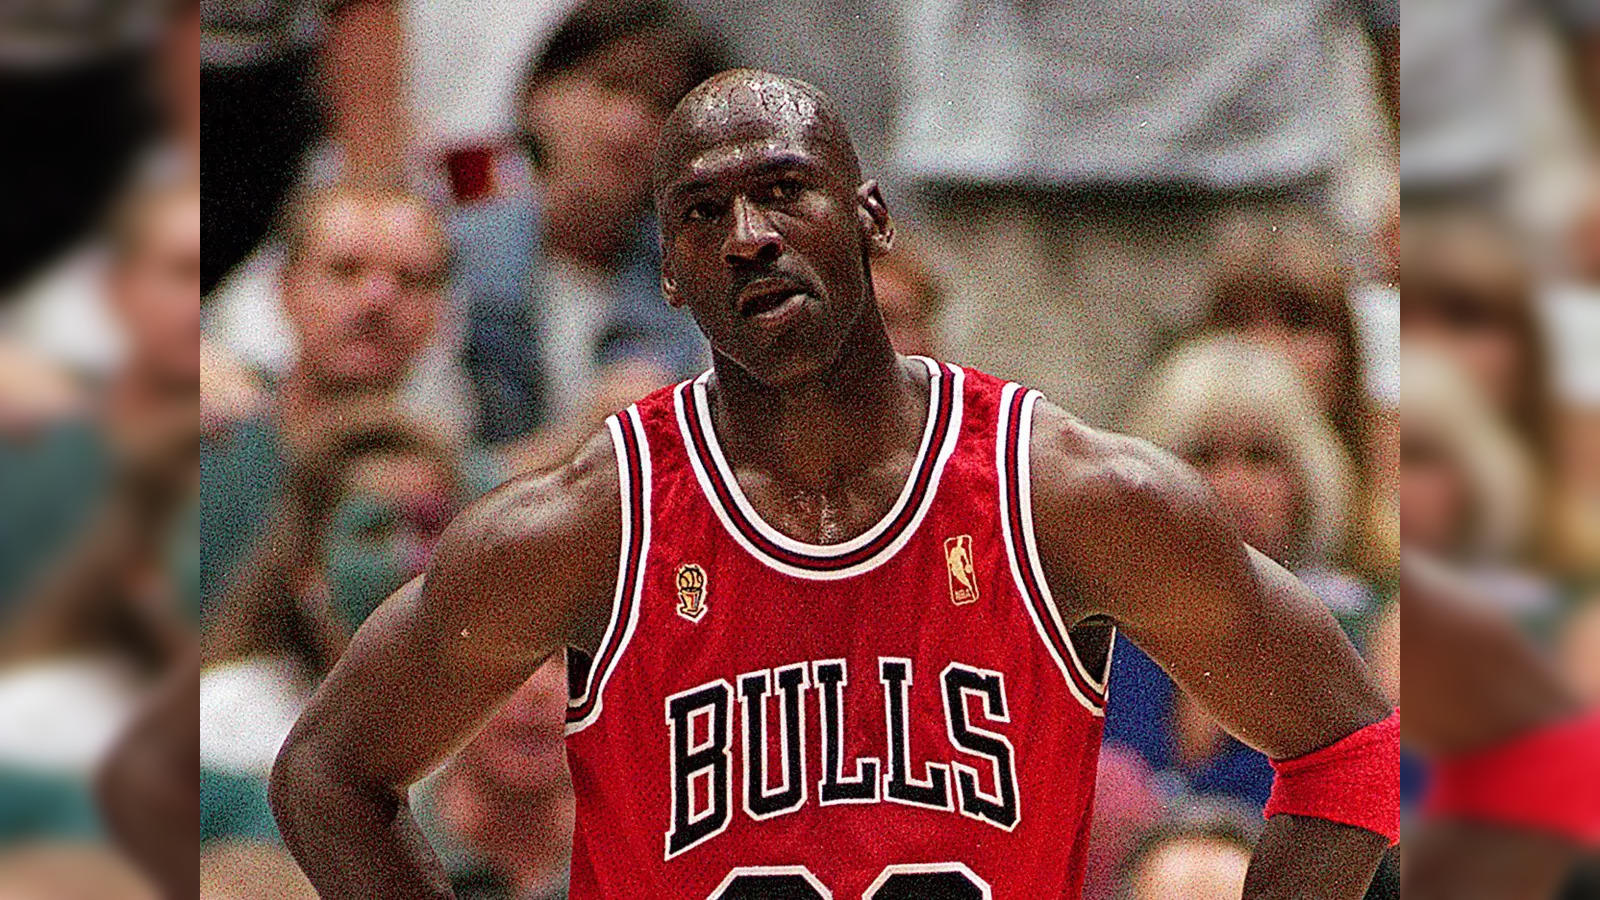 Sneakers worn by NBA legend Michael Jordan in 1997 'Flu Game